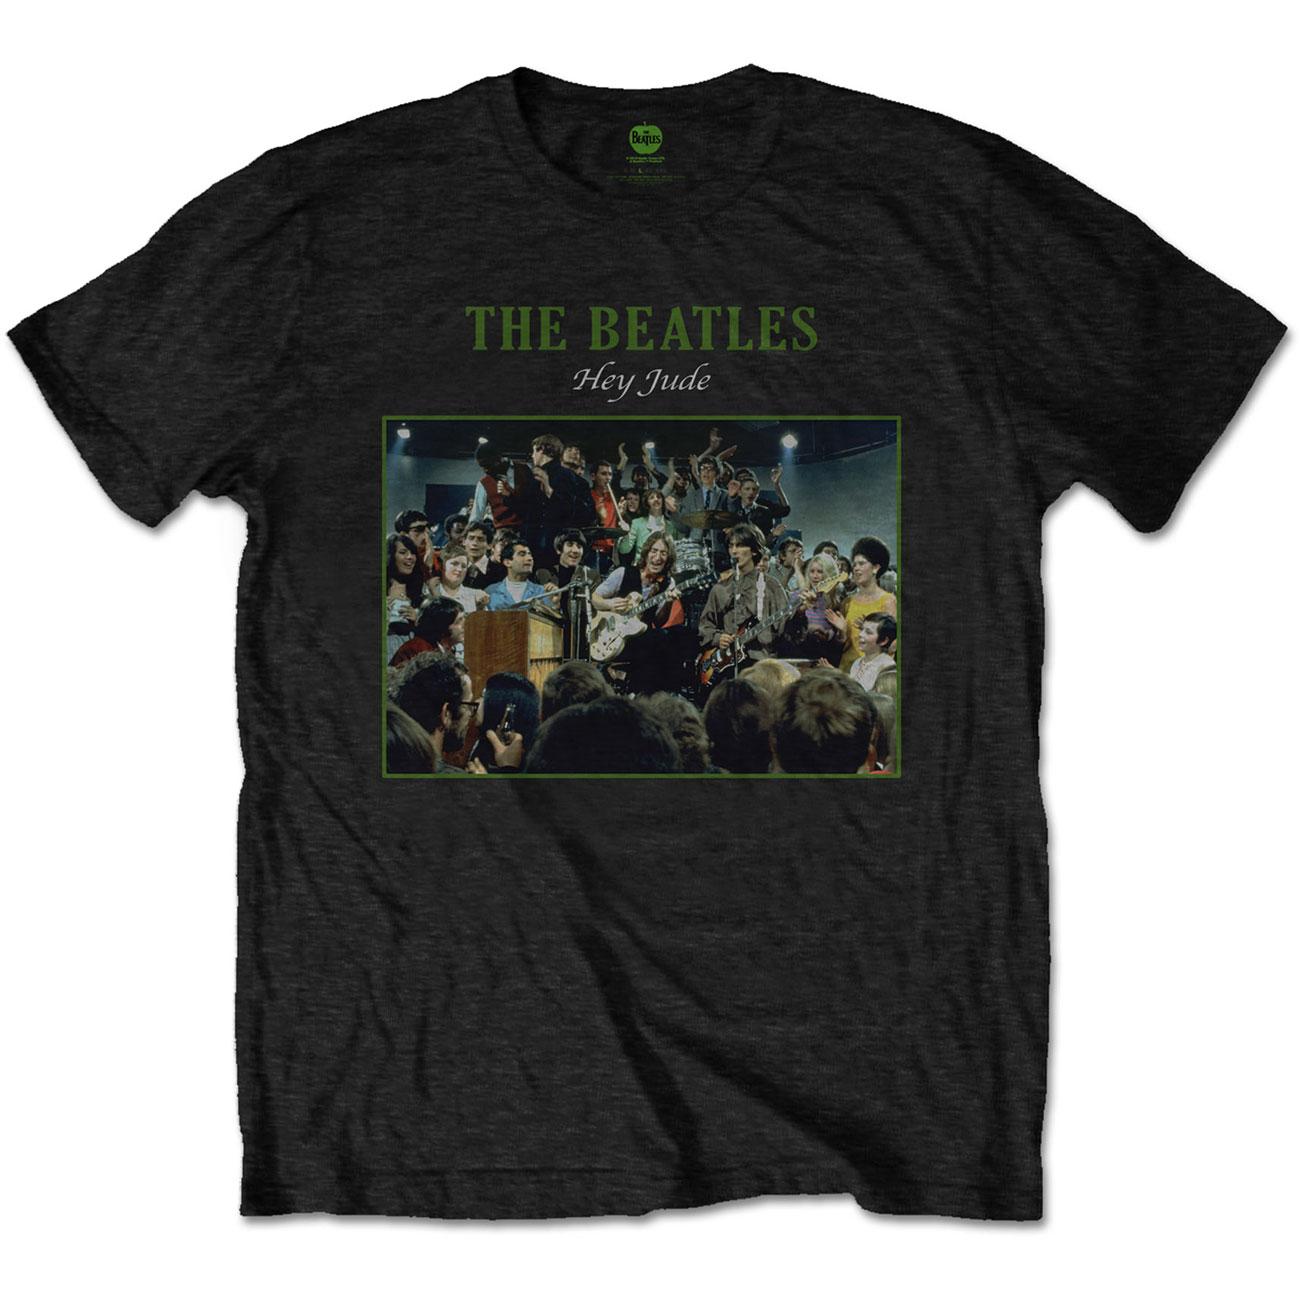 (ザ ビートルズ) The Beatles オフィシャル商品 ユニセックス Hey Jude Live Tシャツ 半袖 トップス 【海外通販】